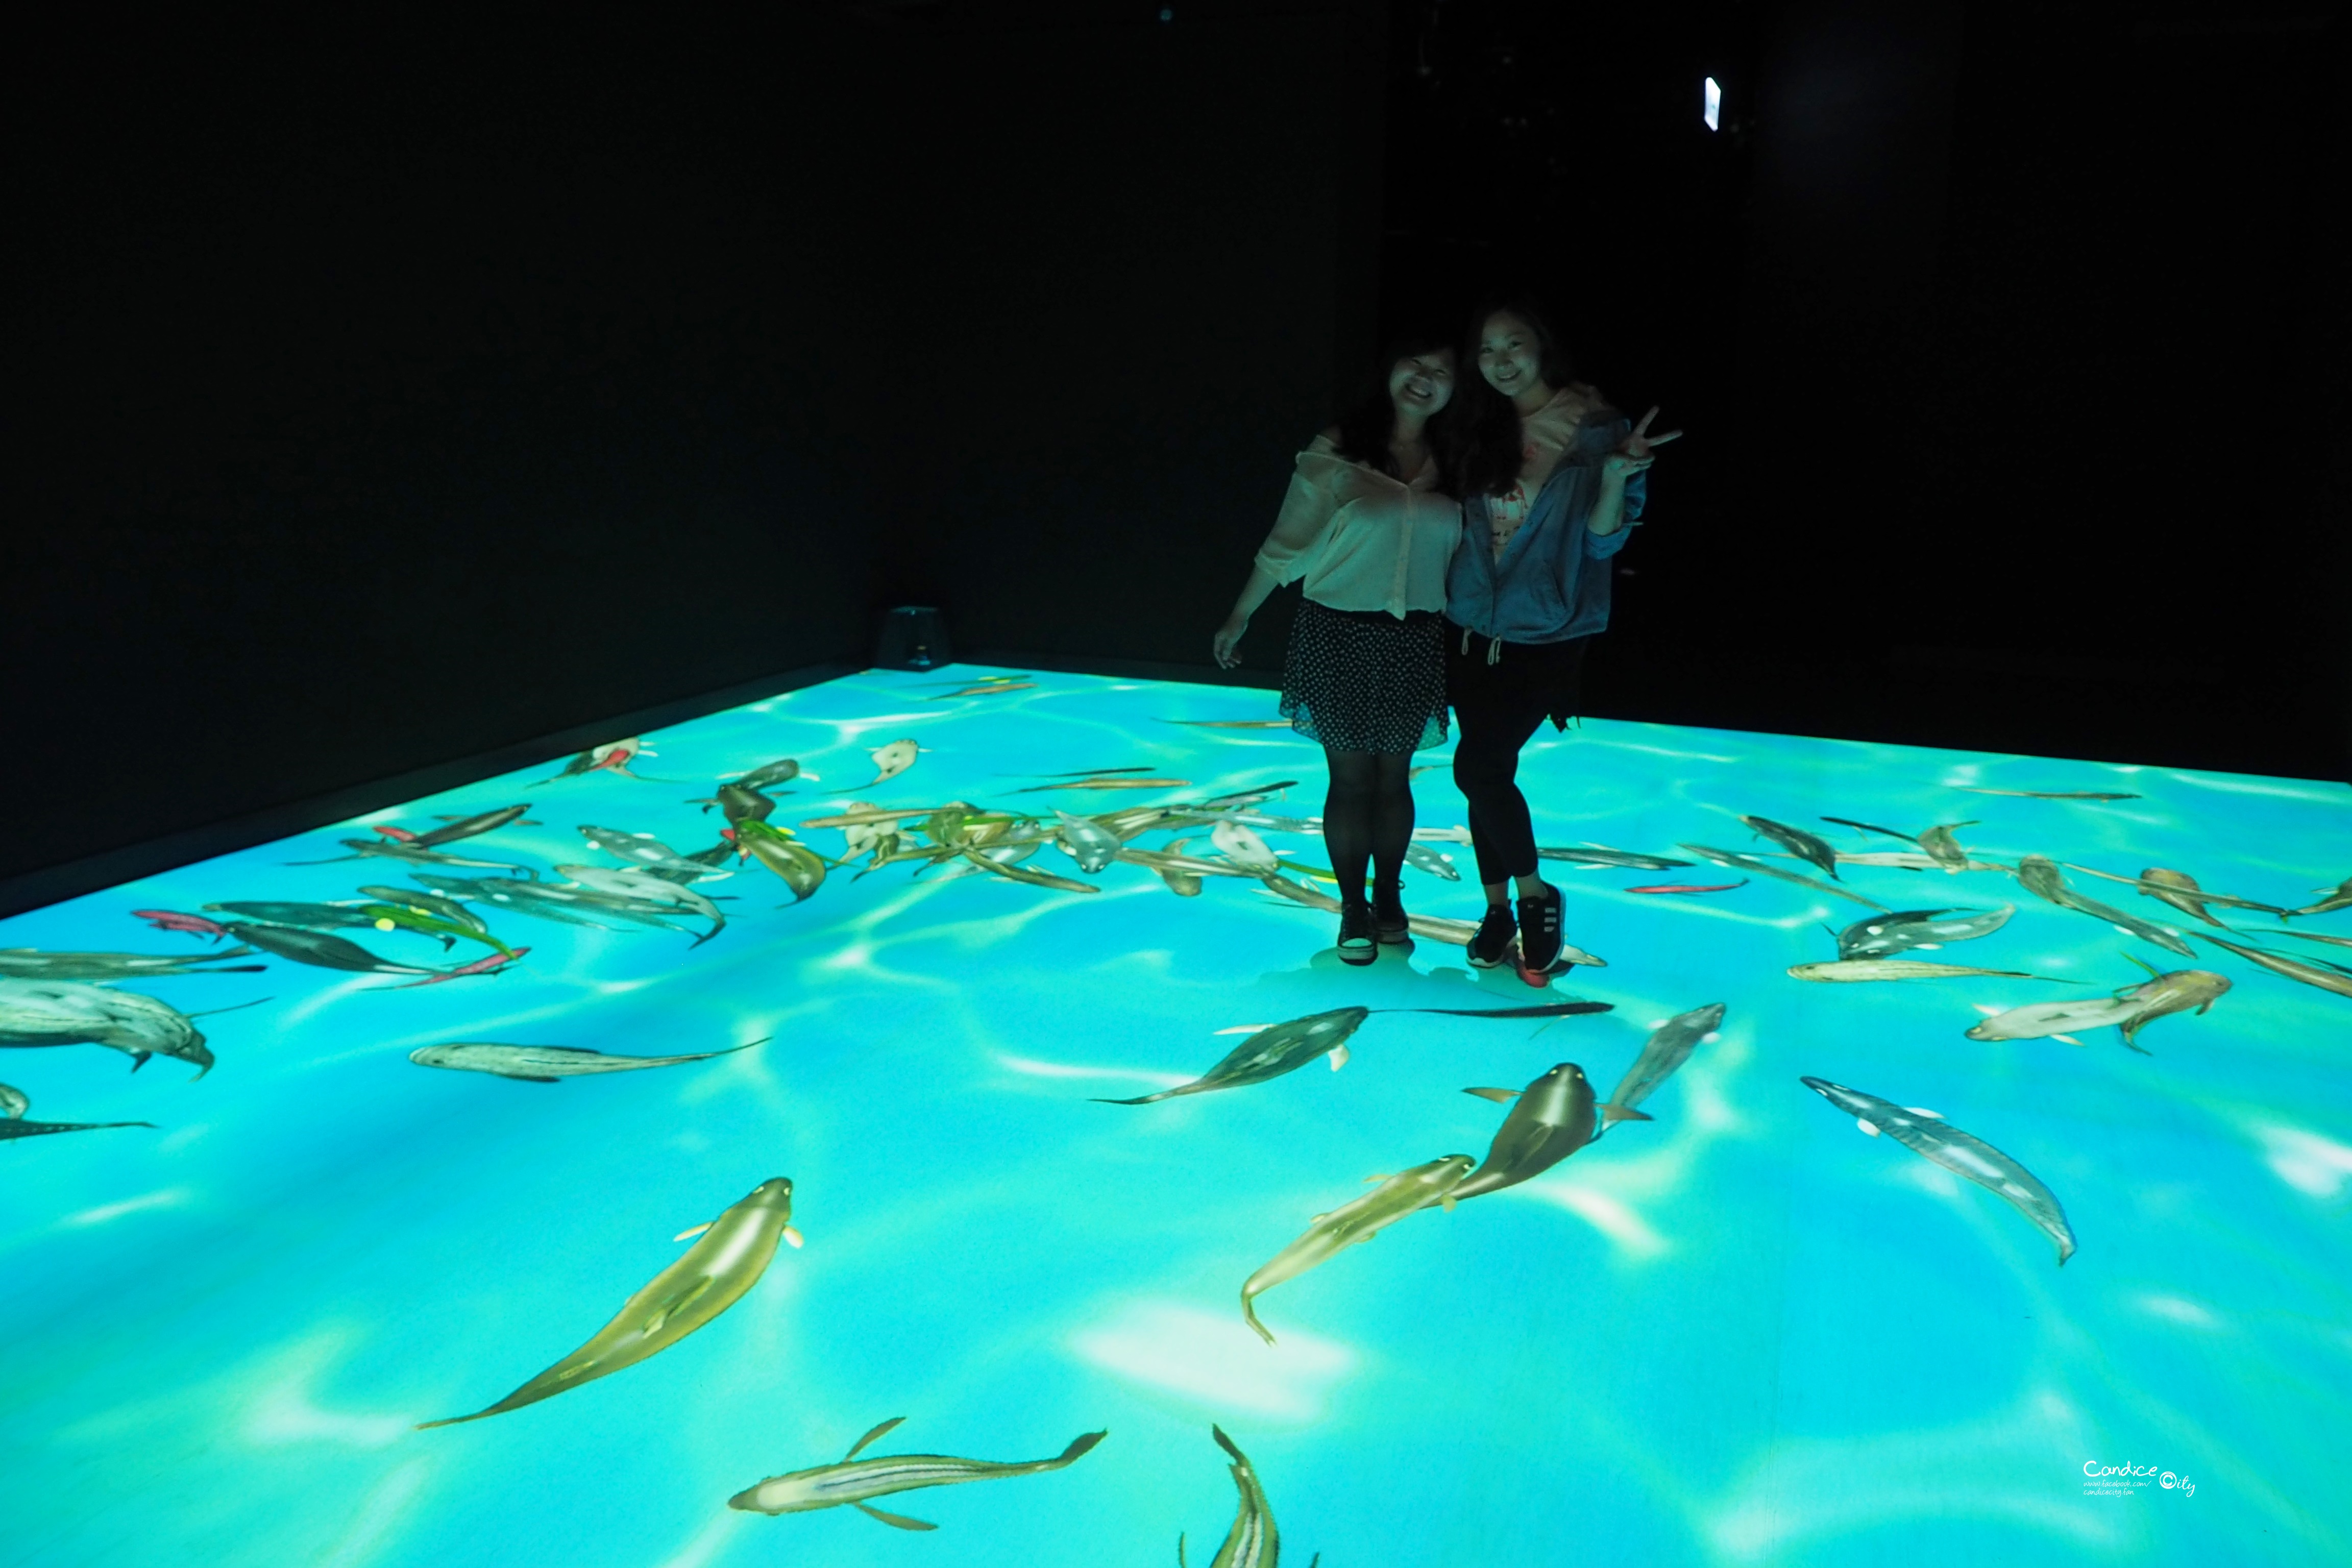 【蘇澳景點】安永心食館3D海洋冒險 天才小釣手 宜蘭新景點觀光工廠 @陳小沁の吃喝玩樂